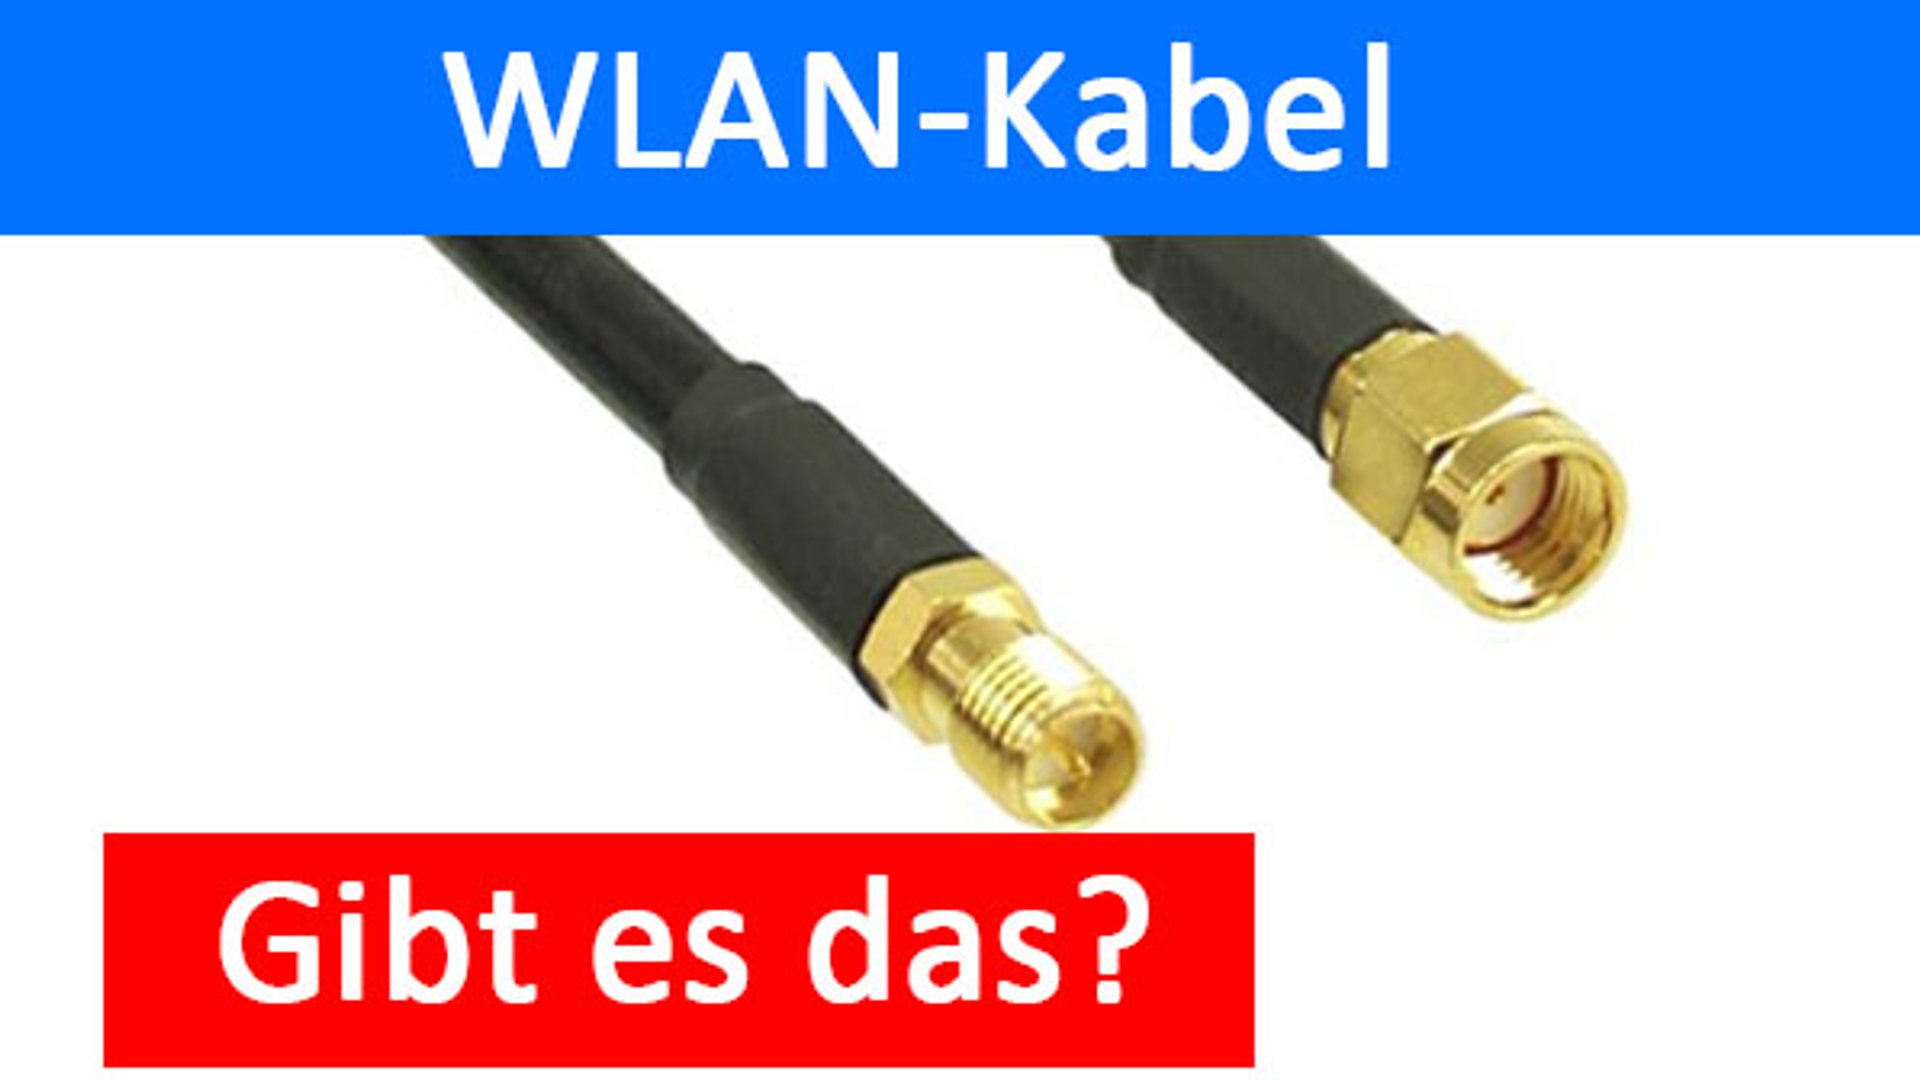 https://static.giga.de/wp-content/uploads/2016/10/wlan-kabel-gibt-es-das-wirklich-rcm1920x1080u.jpg